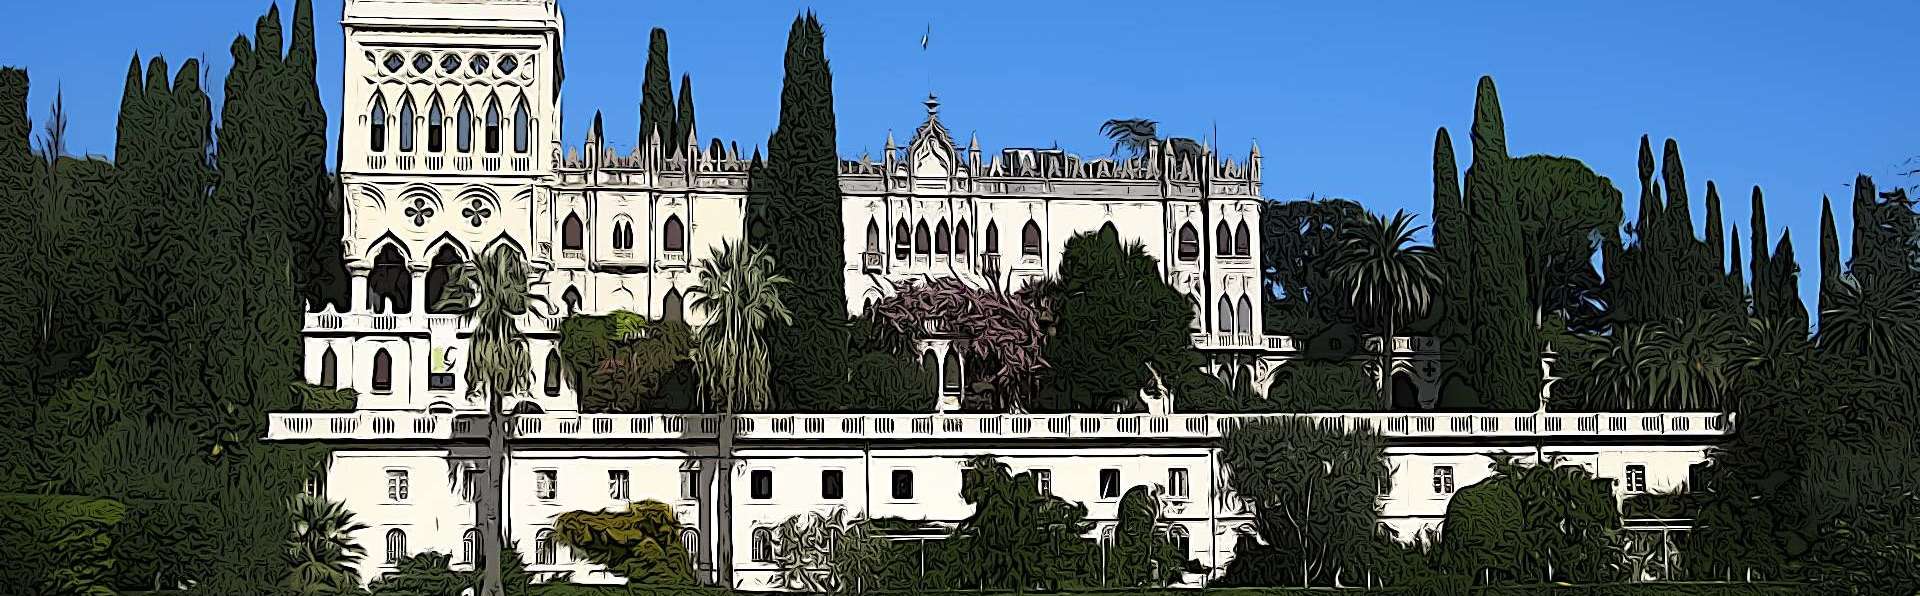 San Felice del Benaco | Villa dell’Isola del Garda